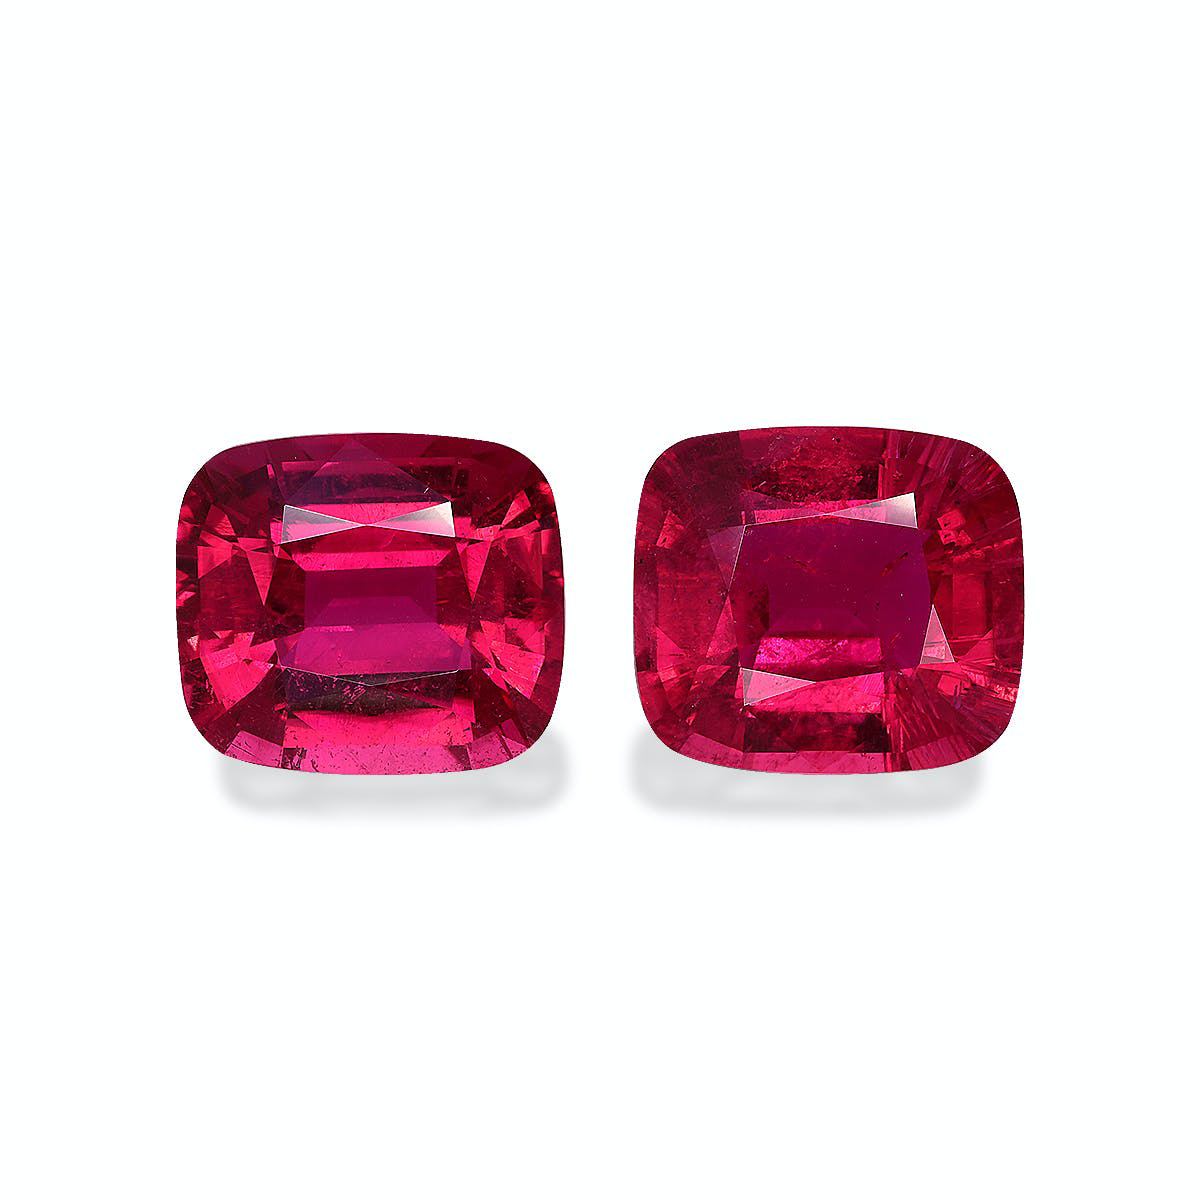 Vivid Pink Rubellite Tourmaline 28.59ct - Pair (RL1183)